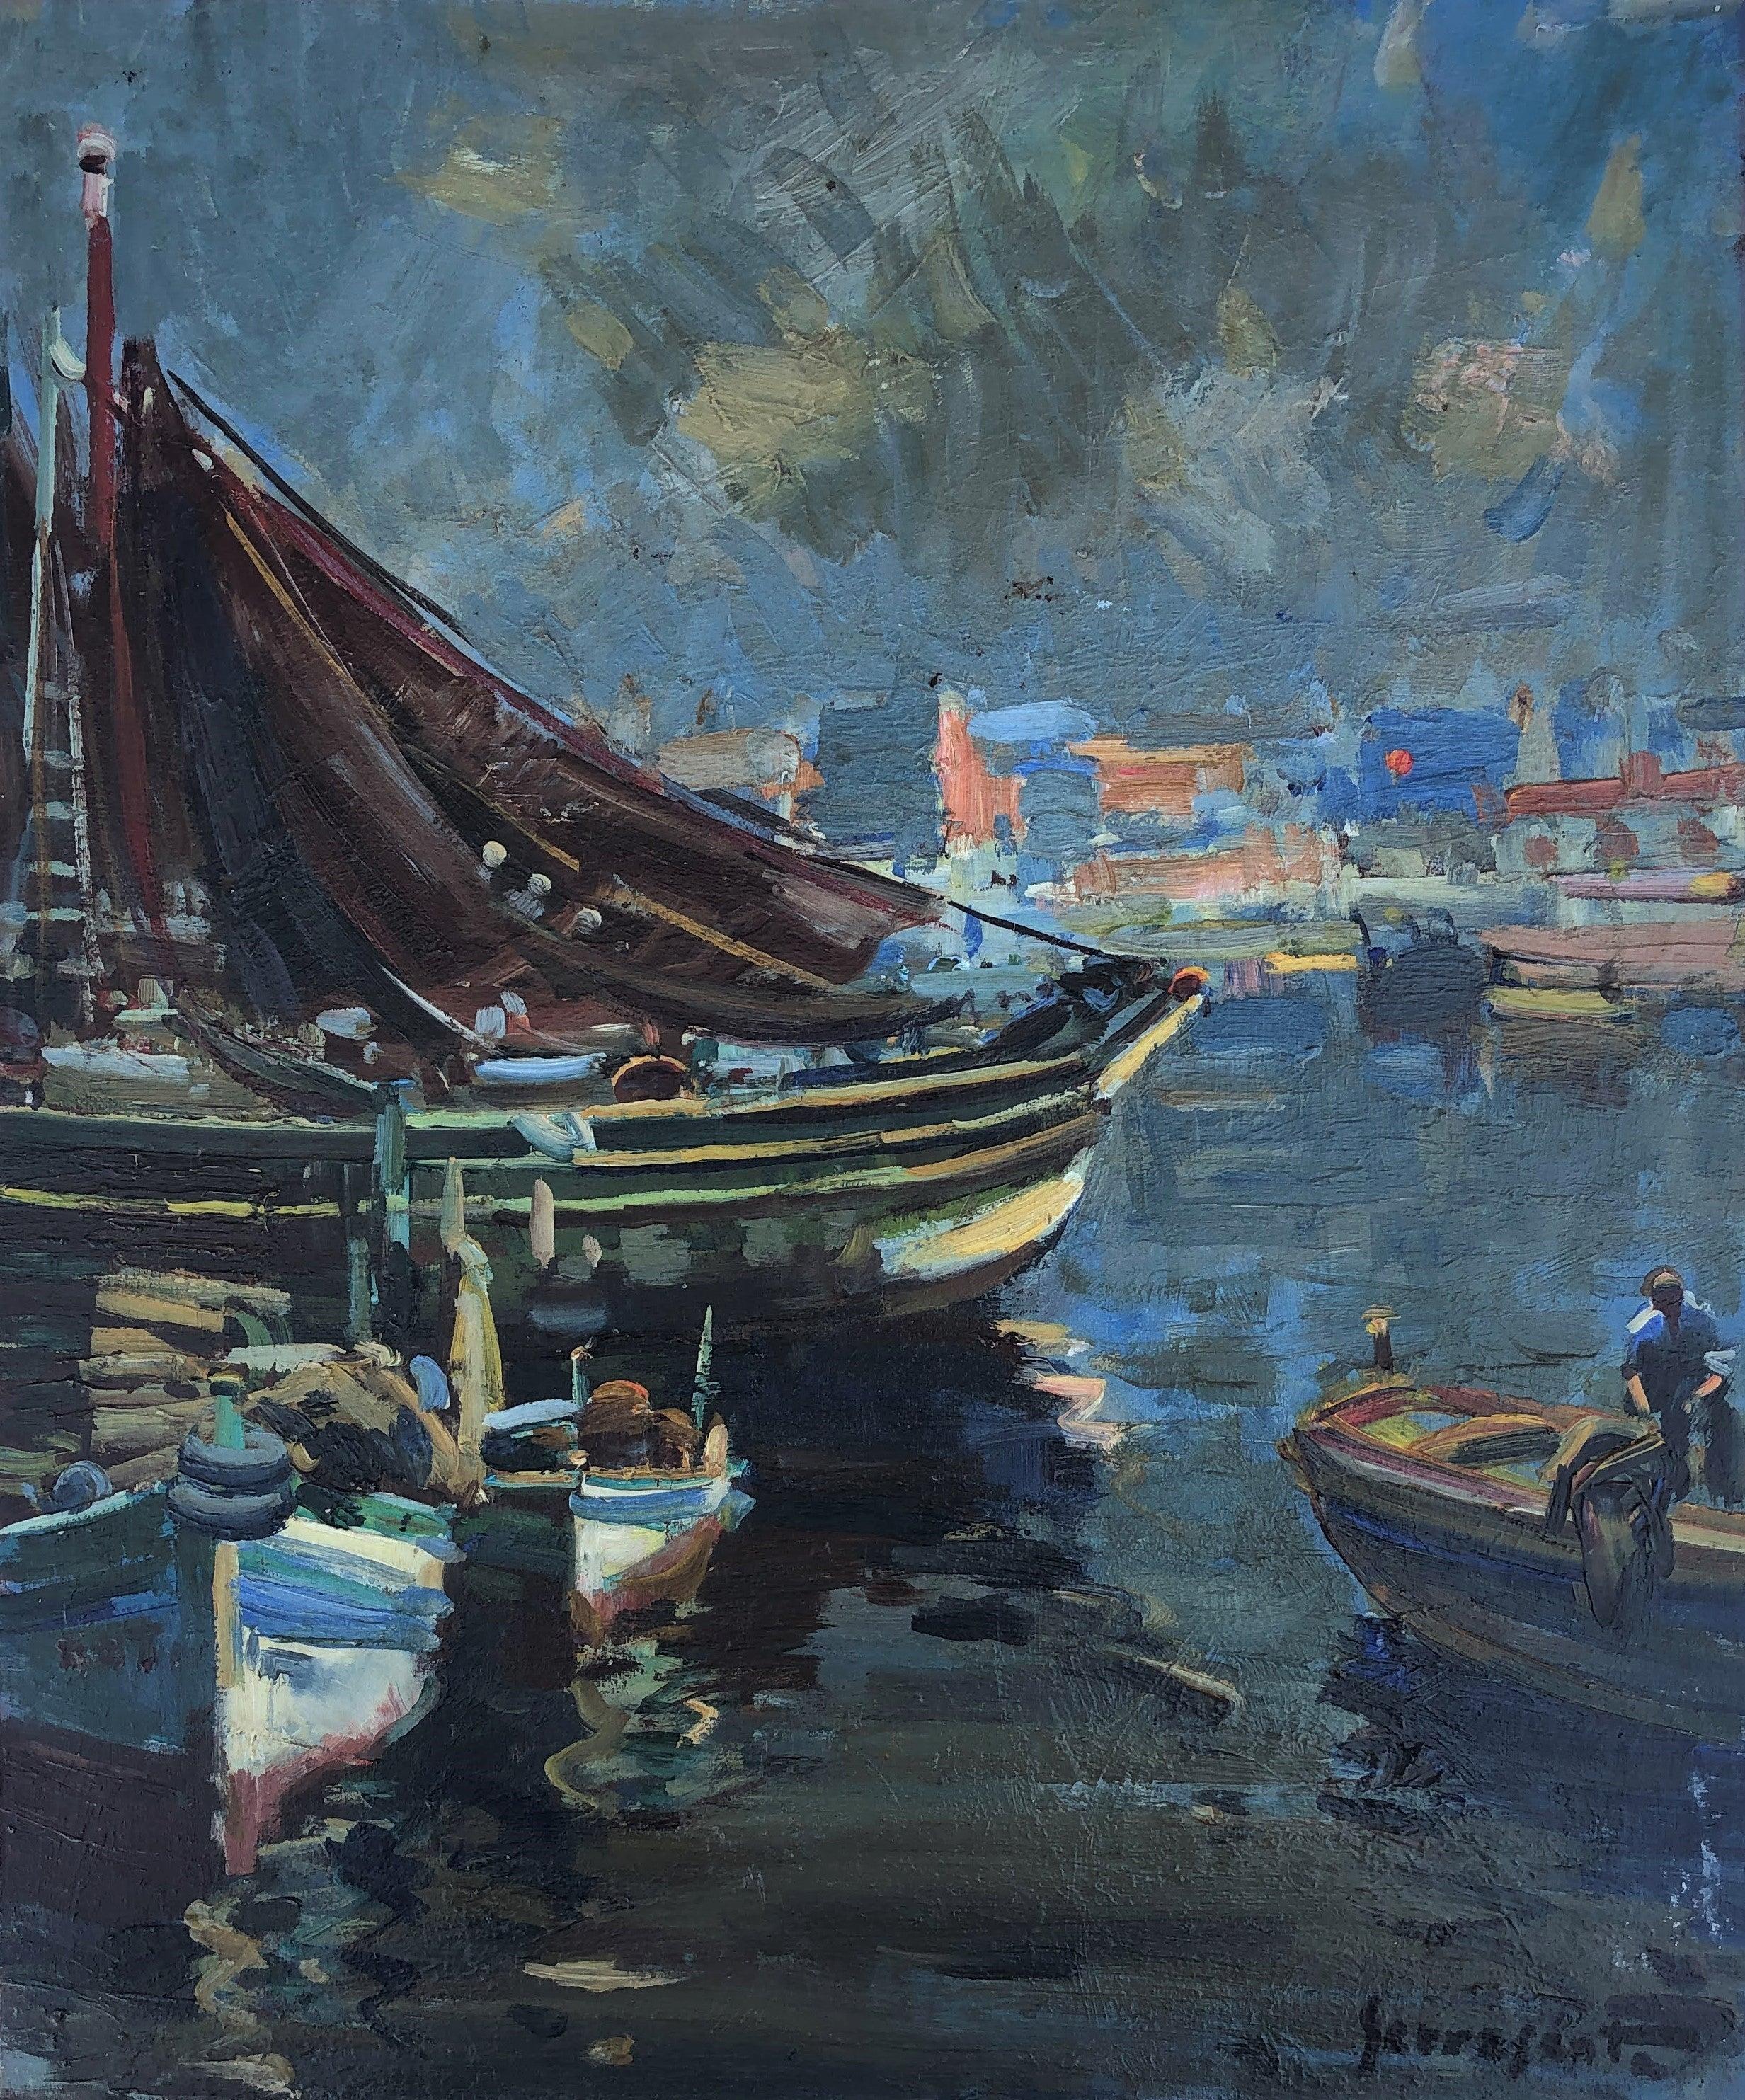 Landscape Painting Josep Serrasanta - Peinture originale à l'huile sur toile, paysage marin d'un port de pêche espagnol